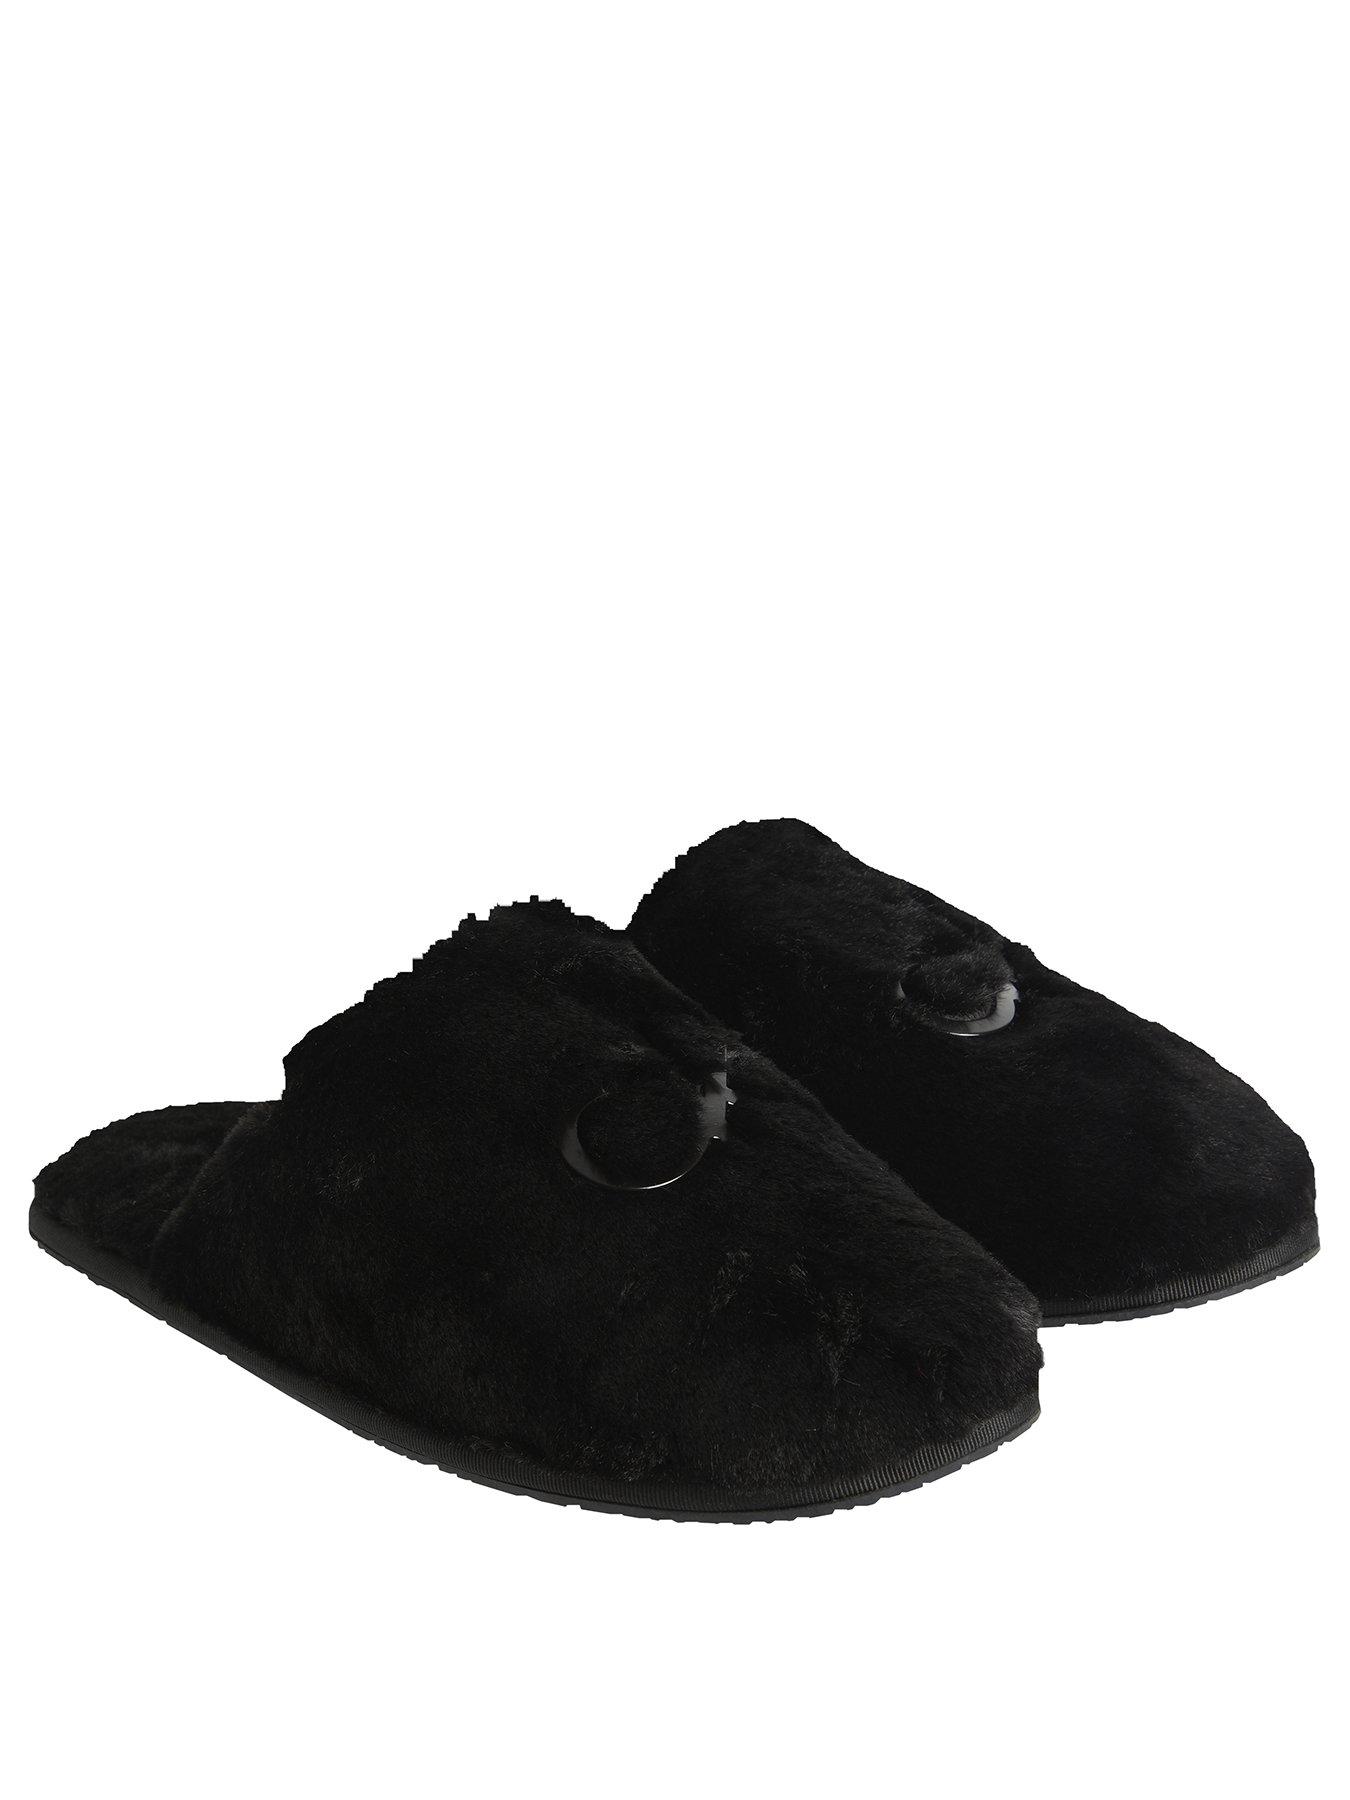 Nightwear & Loungewear Slipper Mule Faux Fur - Black